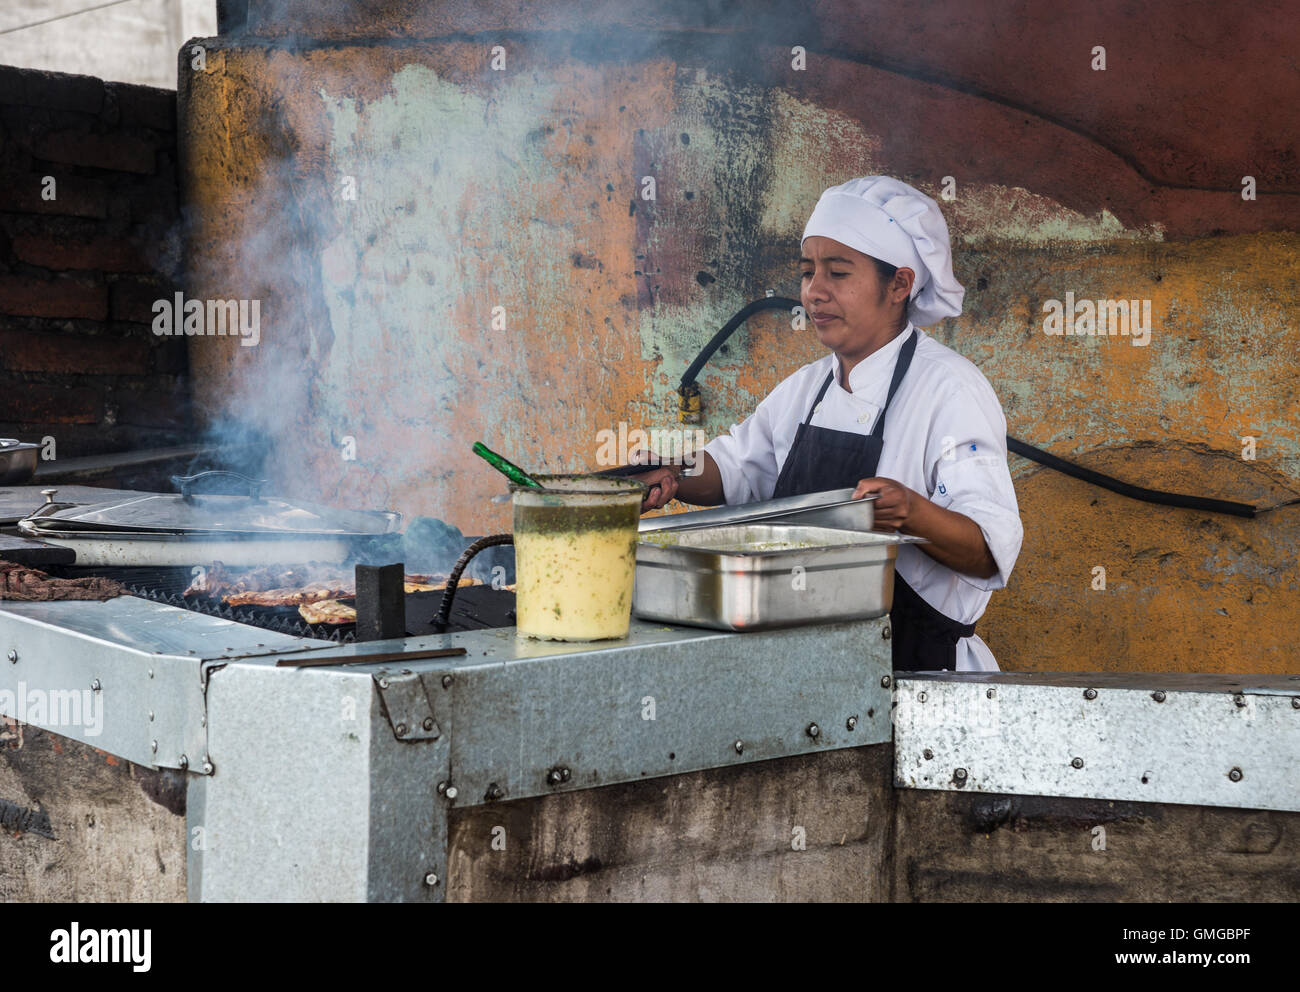 Una mujer cocine cocine la carne en una cocina al aire libre. Quito, Ecuador. Foto de stock